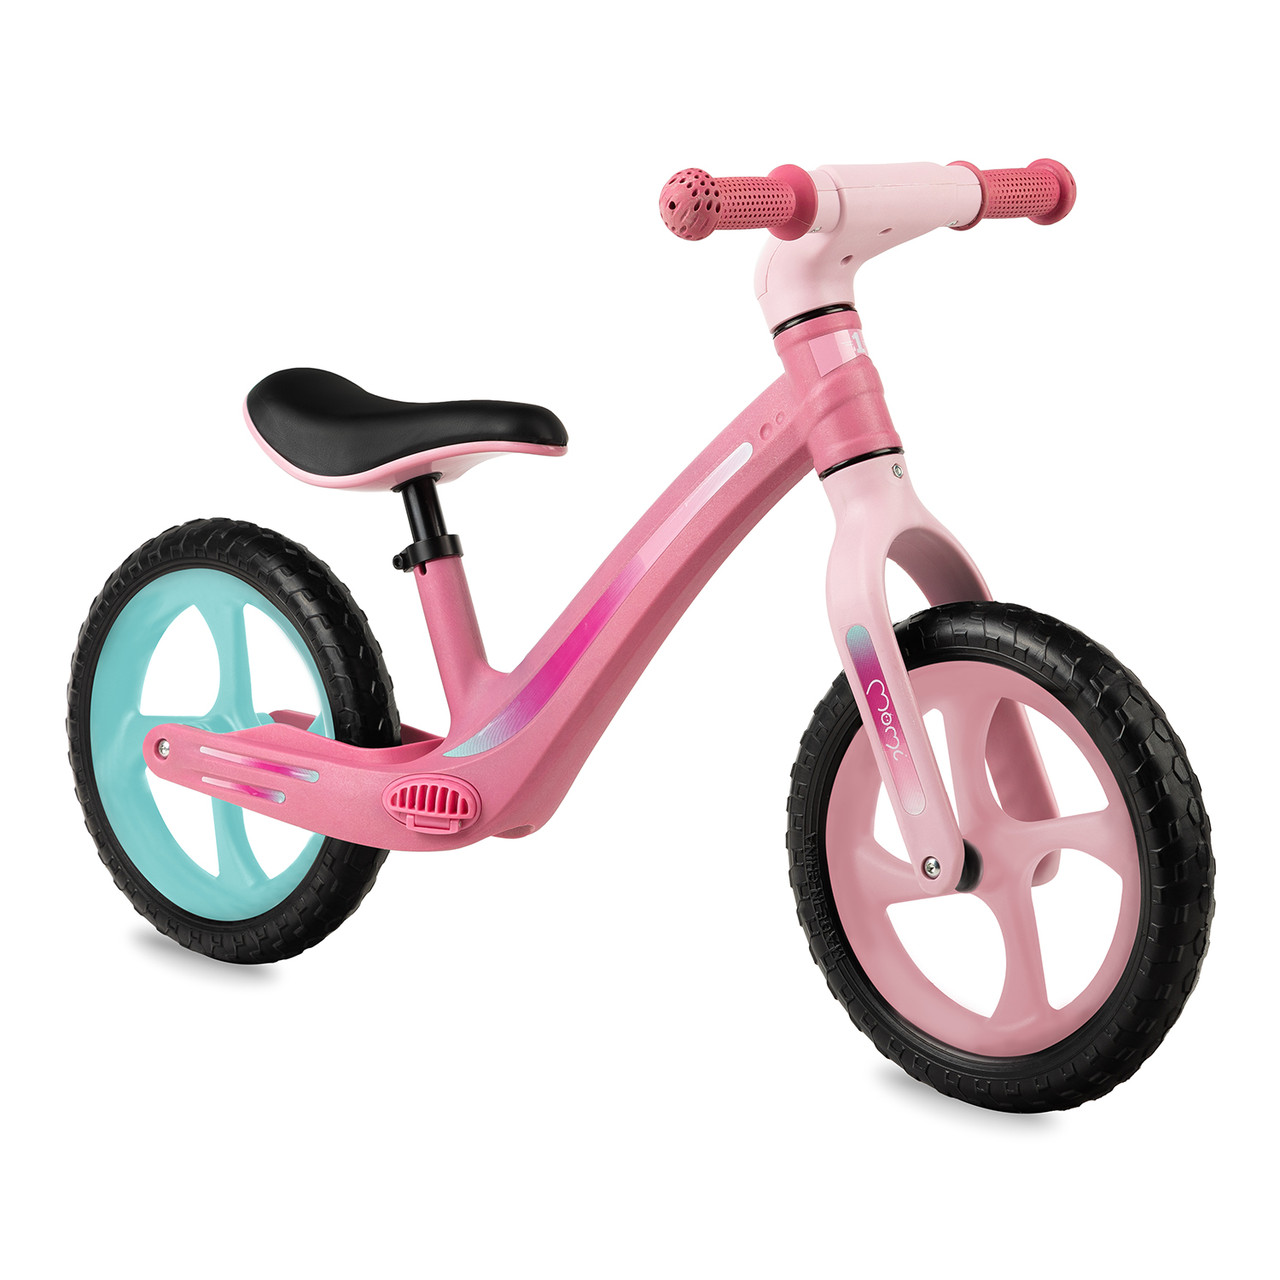 Біговел дитячий двоколісний велосипед без педалей для малюків MoMi MIZO Pink, Біговий велосипед